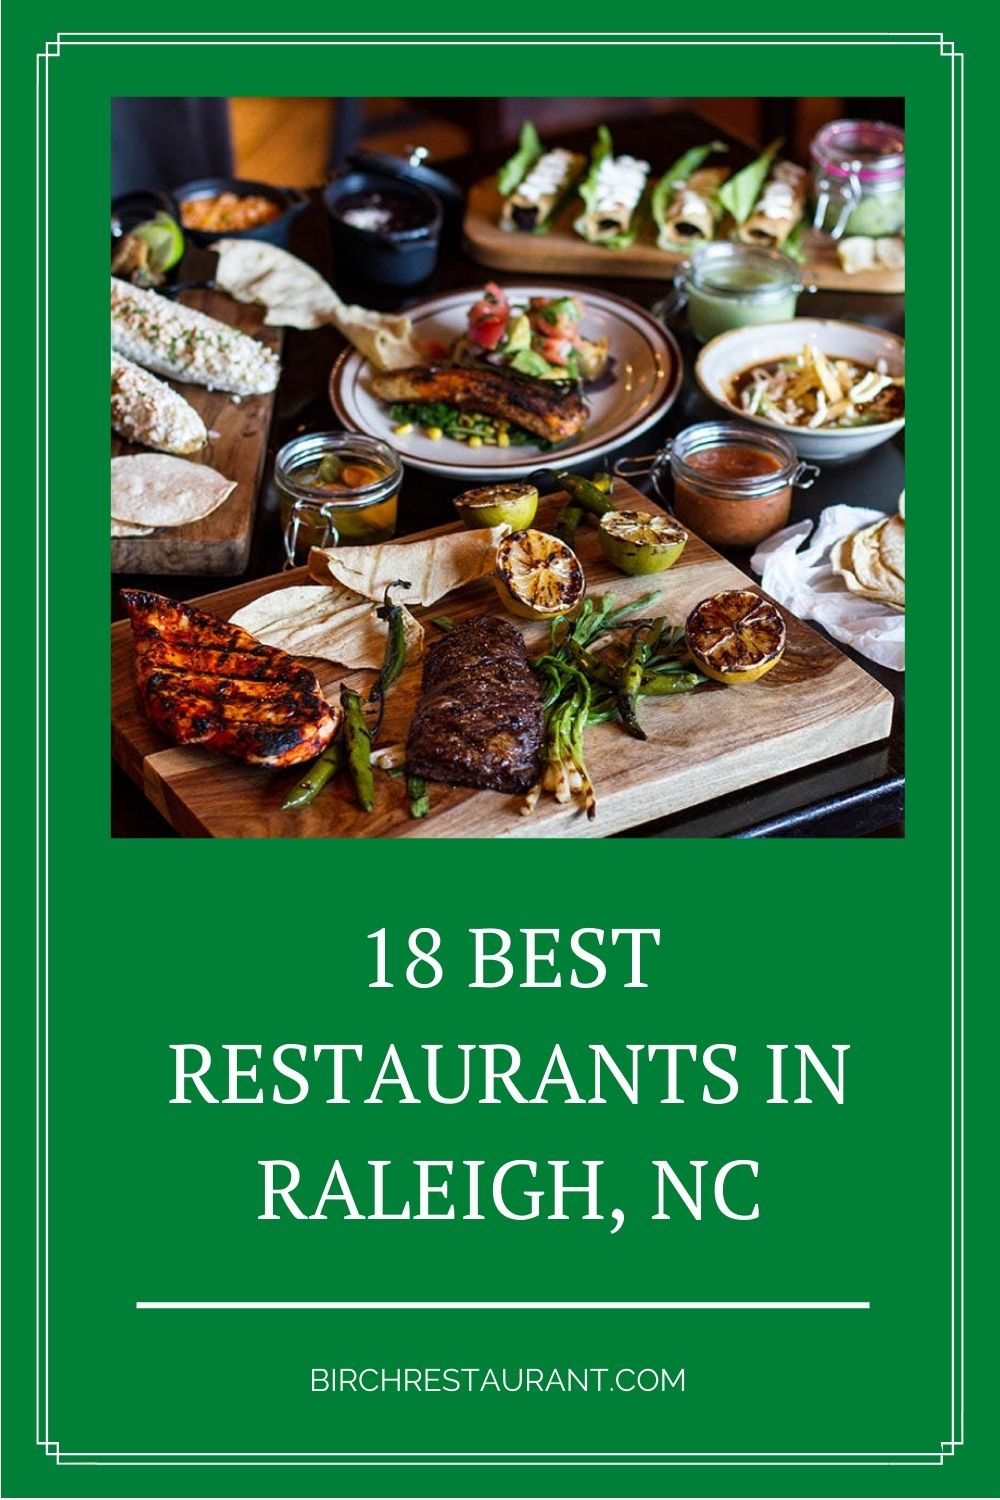 Best Restaurants in Raleigh